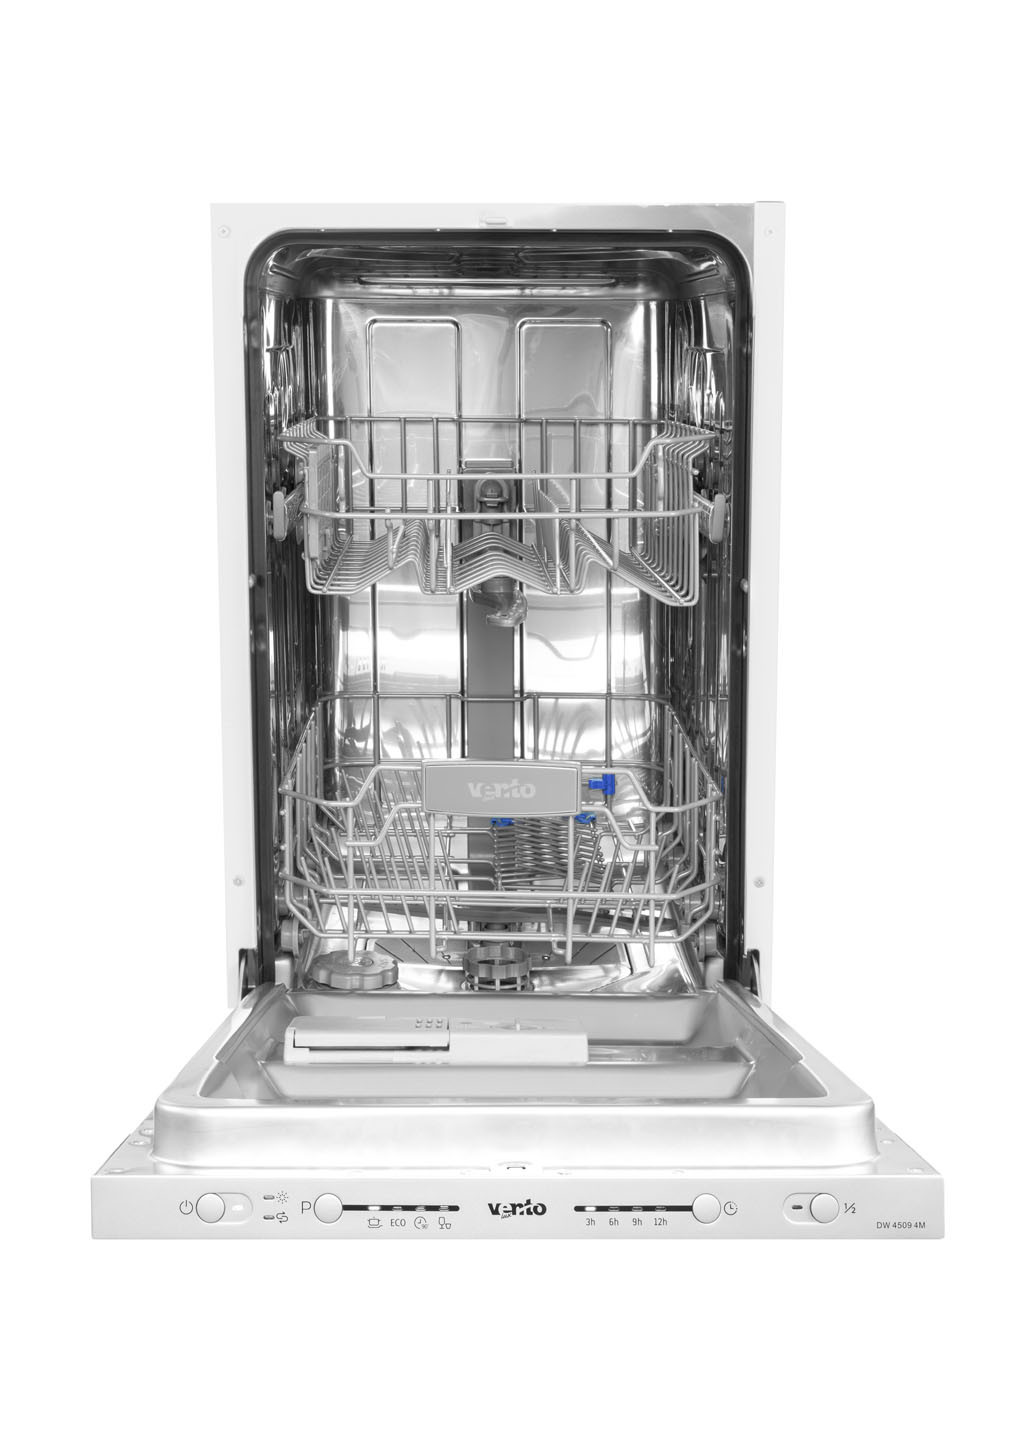 Посудомоечная машина полновстраиваемая Ventolux DW 4509 4M